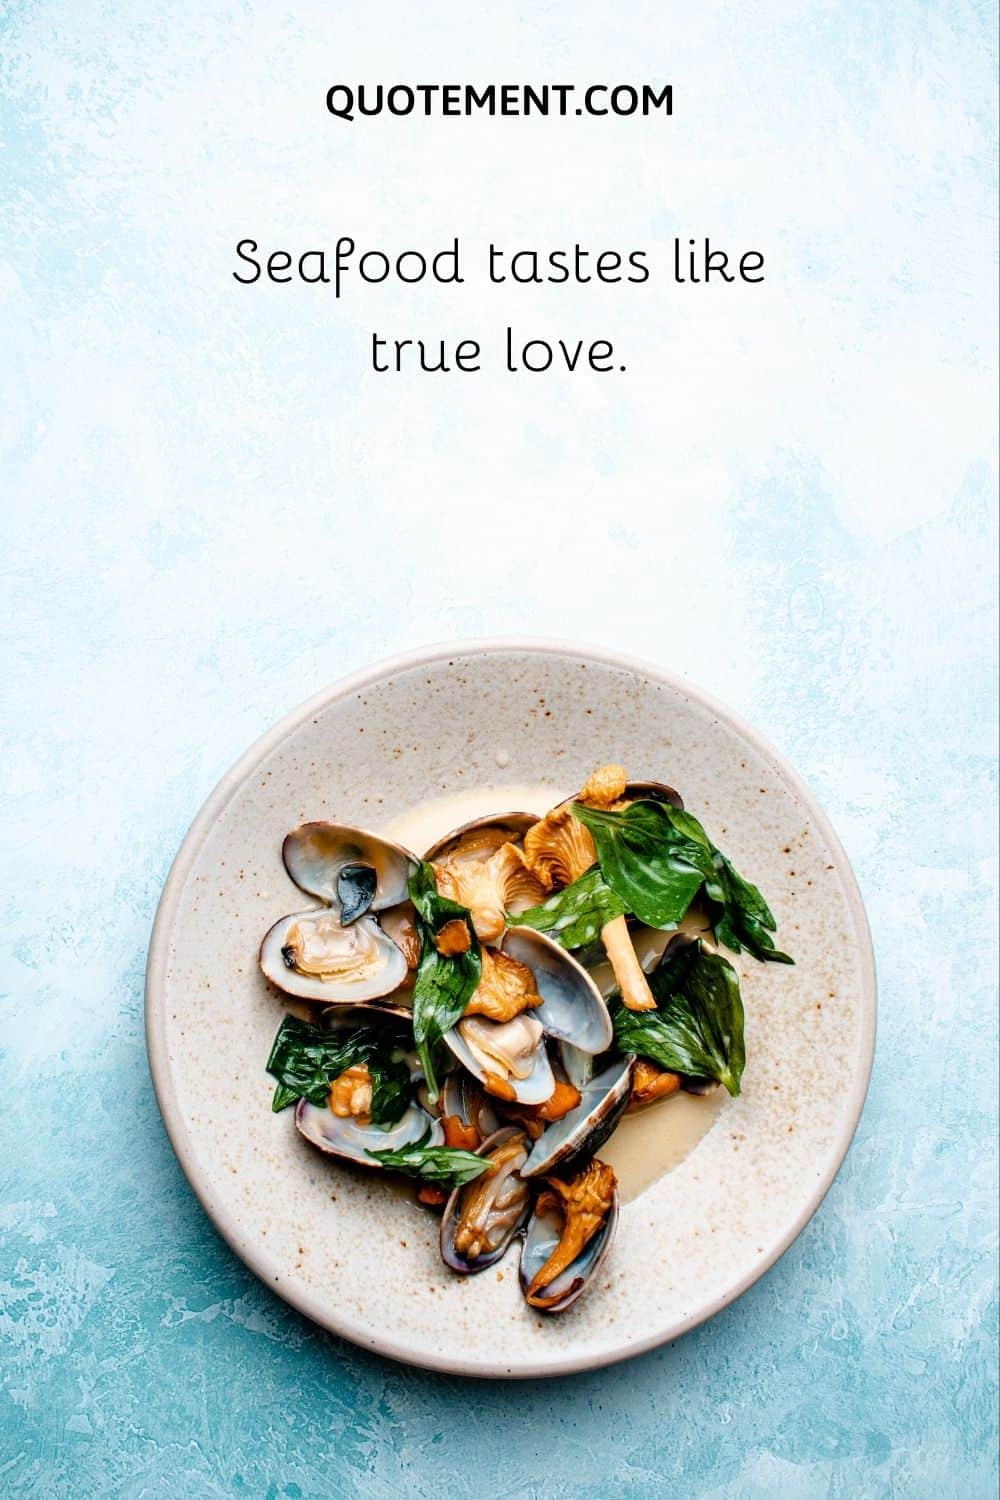 Seafood tastes like true love.